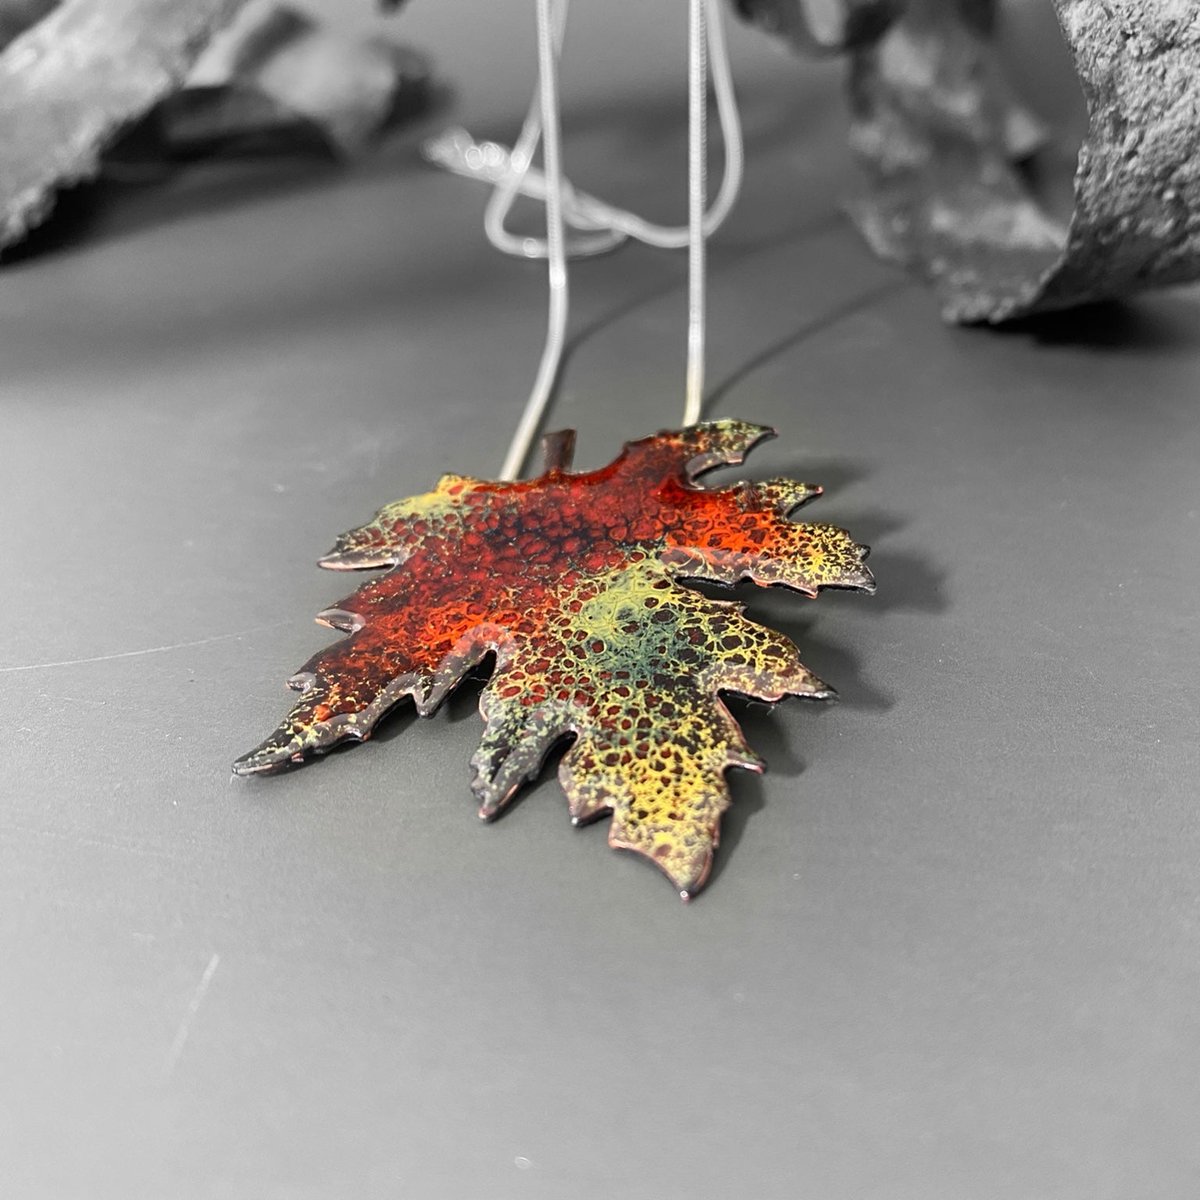 Enamel Maple Leaf Pendant tuppu.net/9eecdc51 #HandmadeHour #MHHSBD #bizbubble #inbizhour #shopsmall #UKHashtags #giftideas ##UKGiftHour